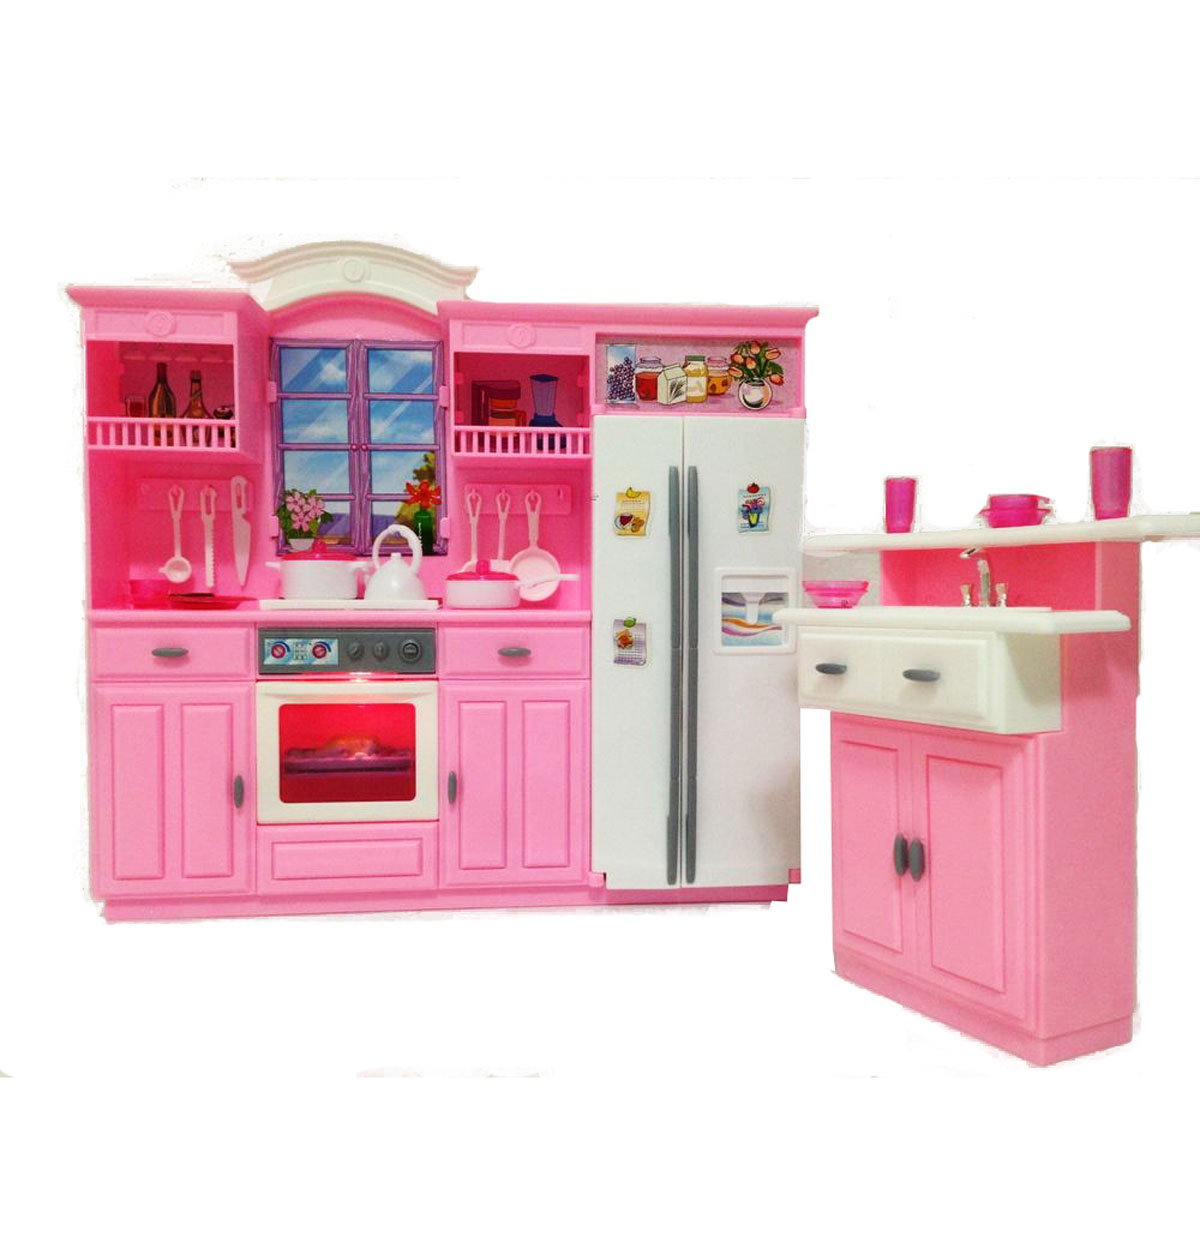 Мебель для кухни с холодильником и газовой плитой